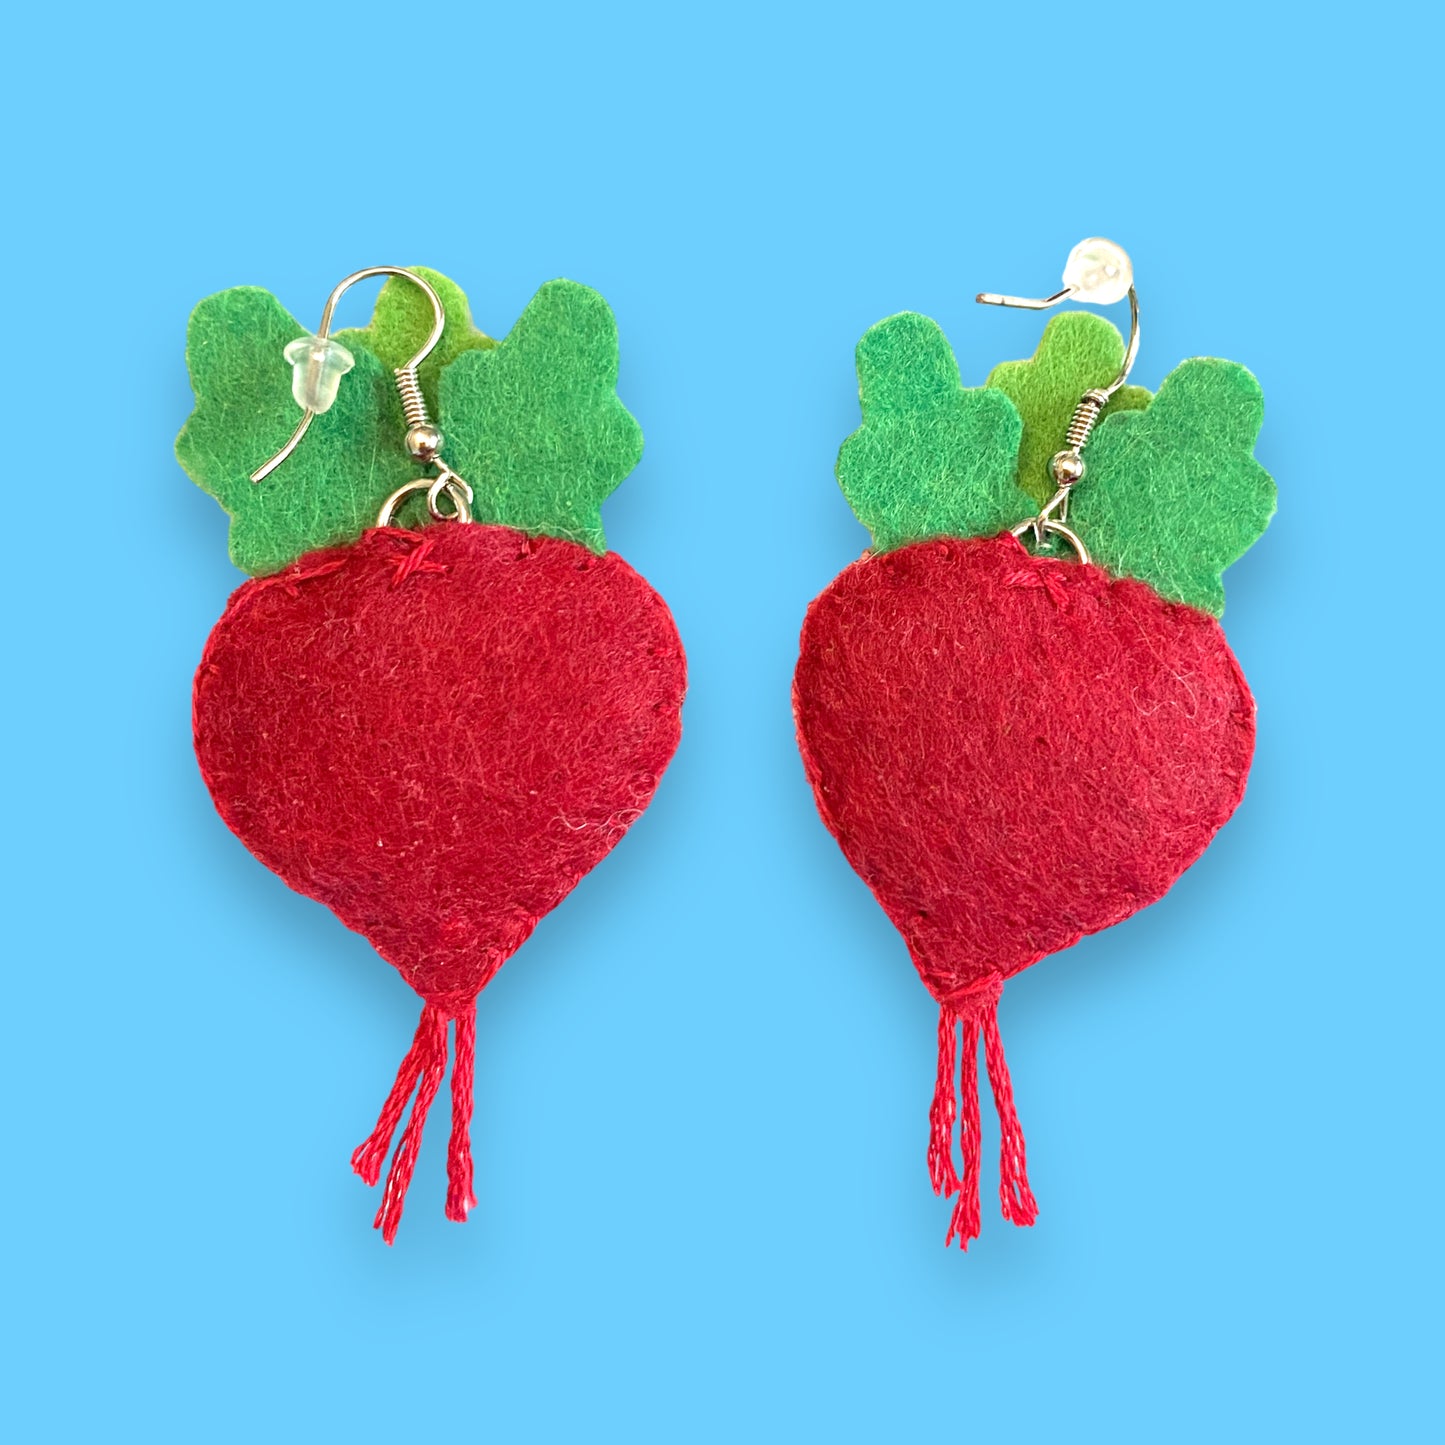 beet or radish felt earrings